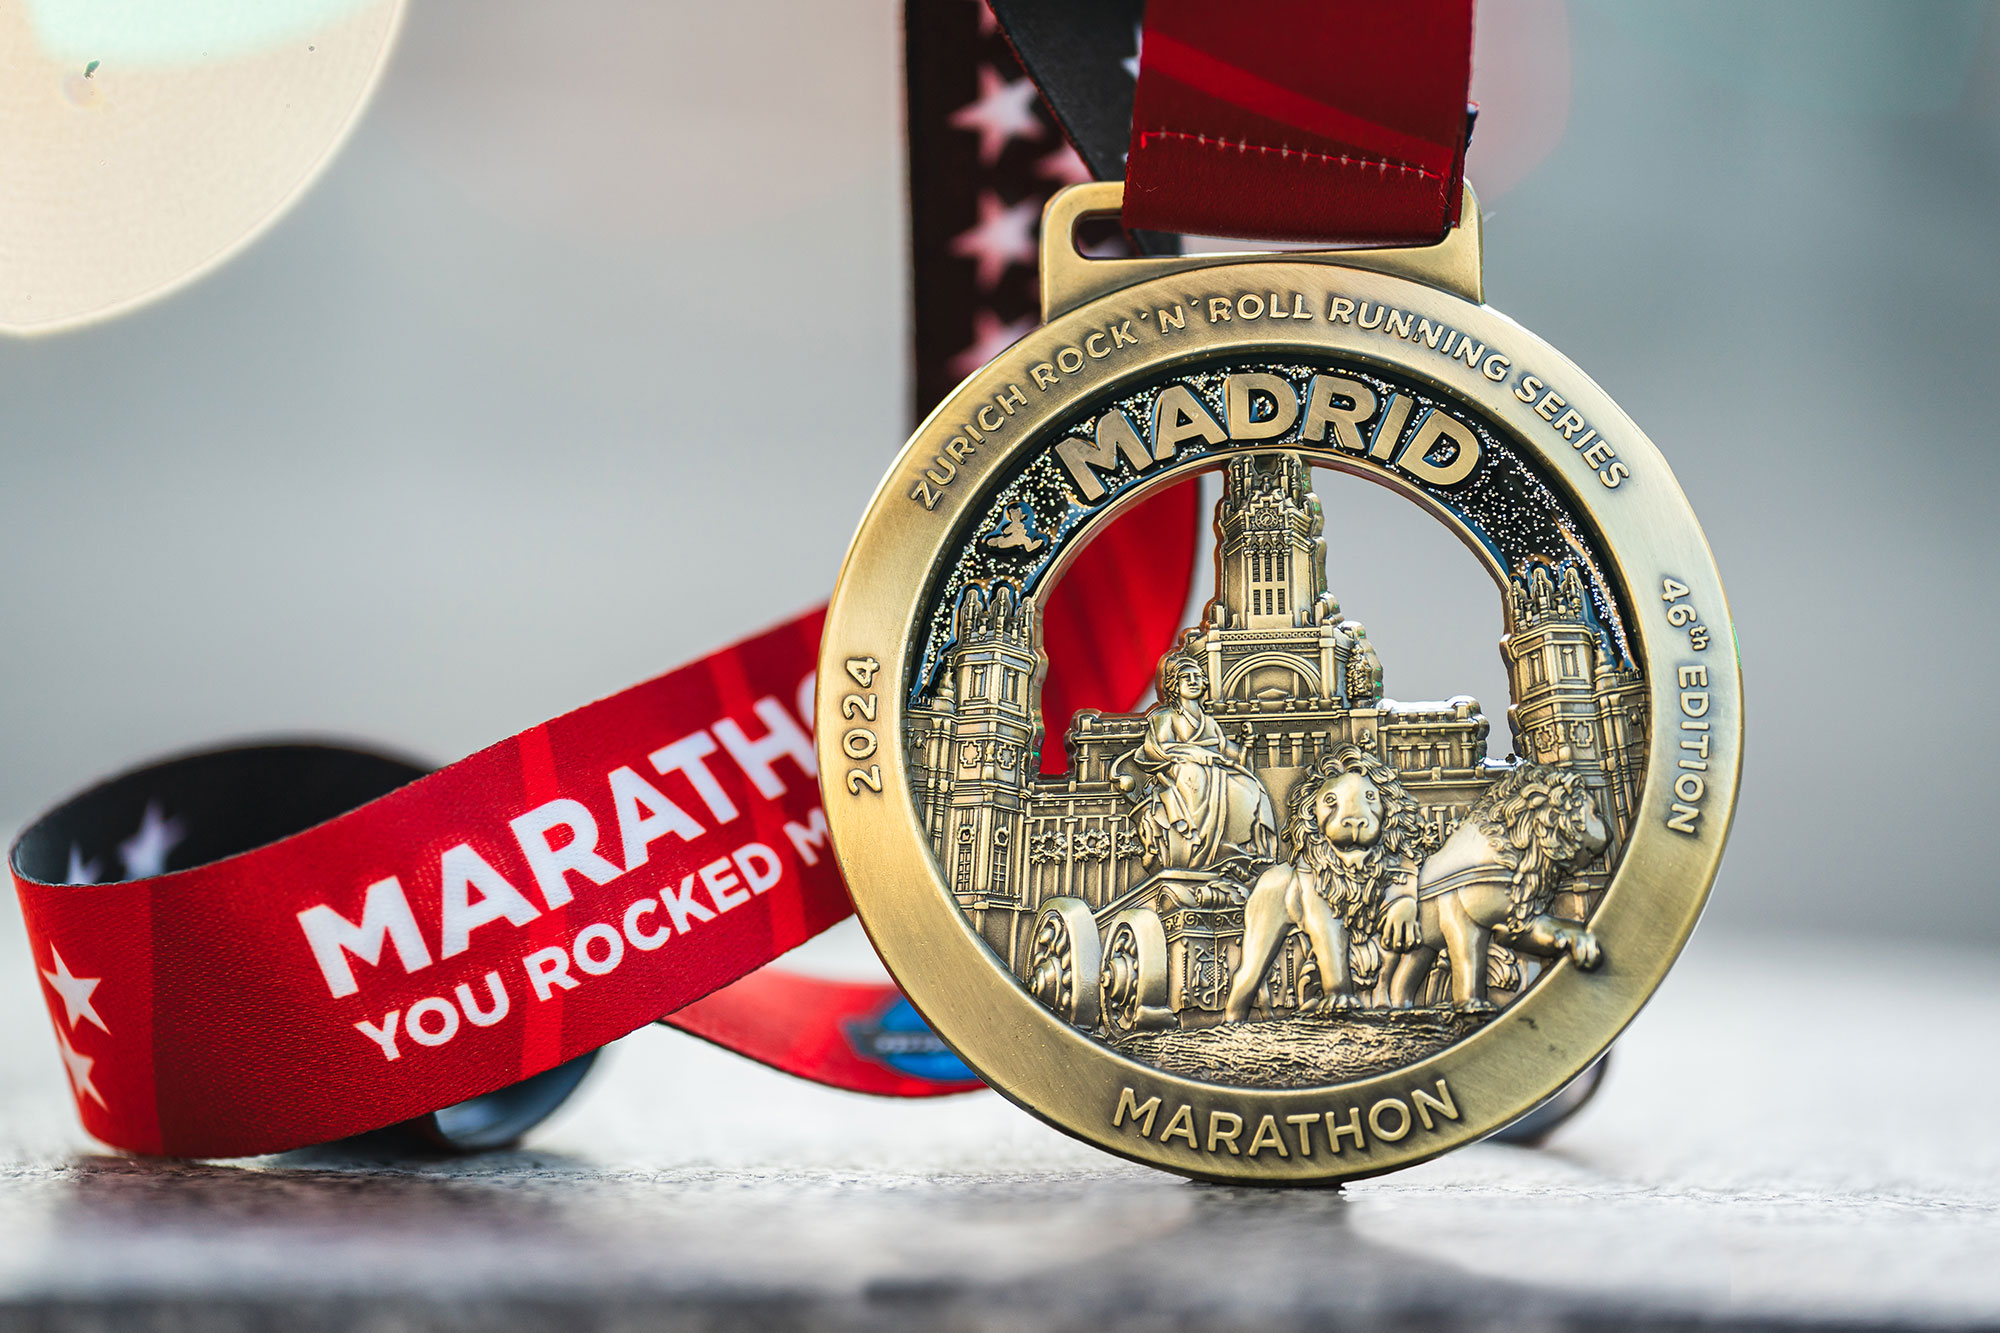 medalla 42k Zurich Rock´n´Roll Running Series Madrid